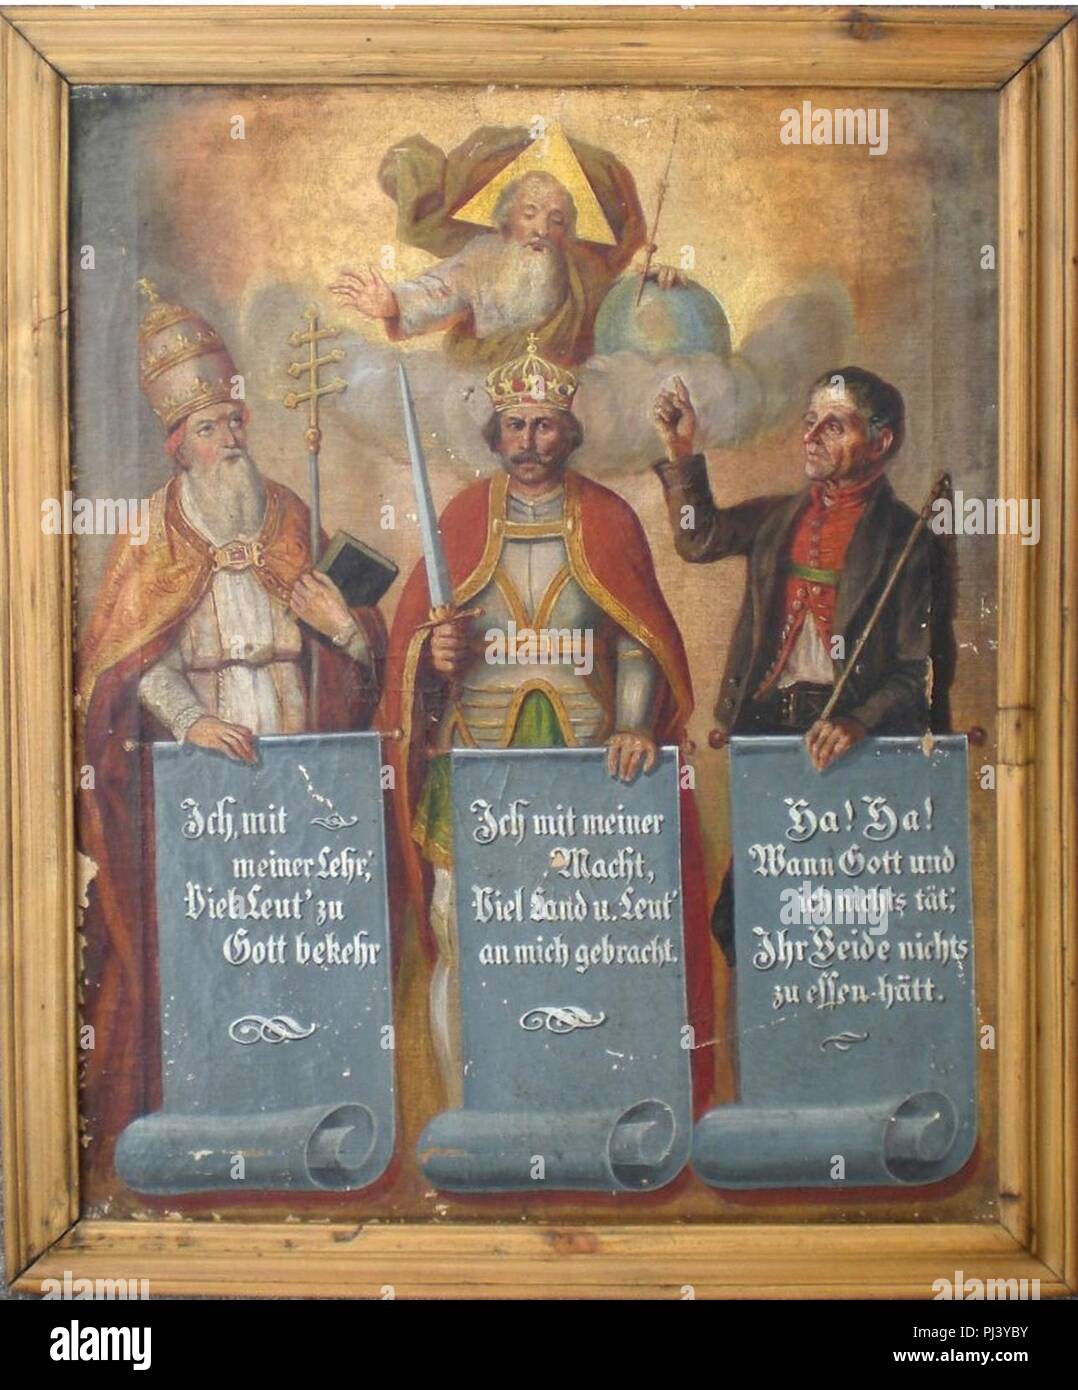 Balthasar Waltl - Gott und die drei Geburtsstände - Klerus, Adel und Bauern. Foto Stock